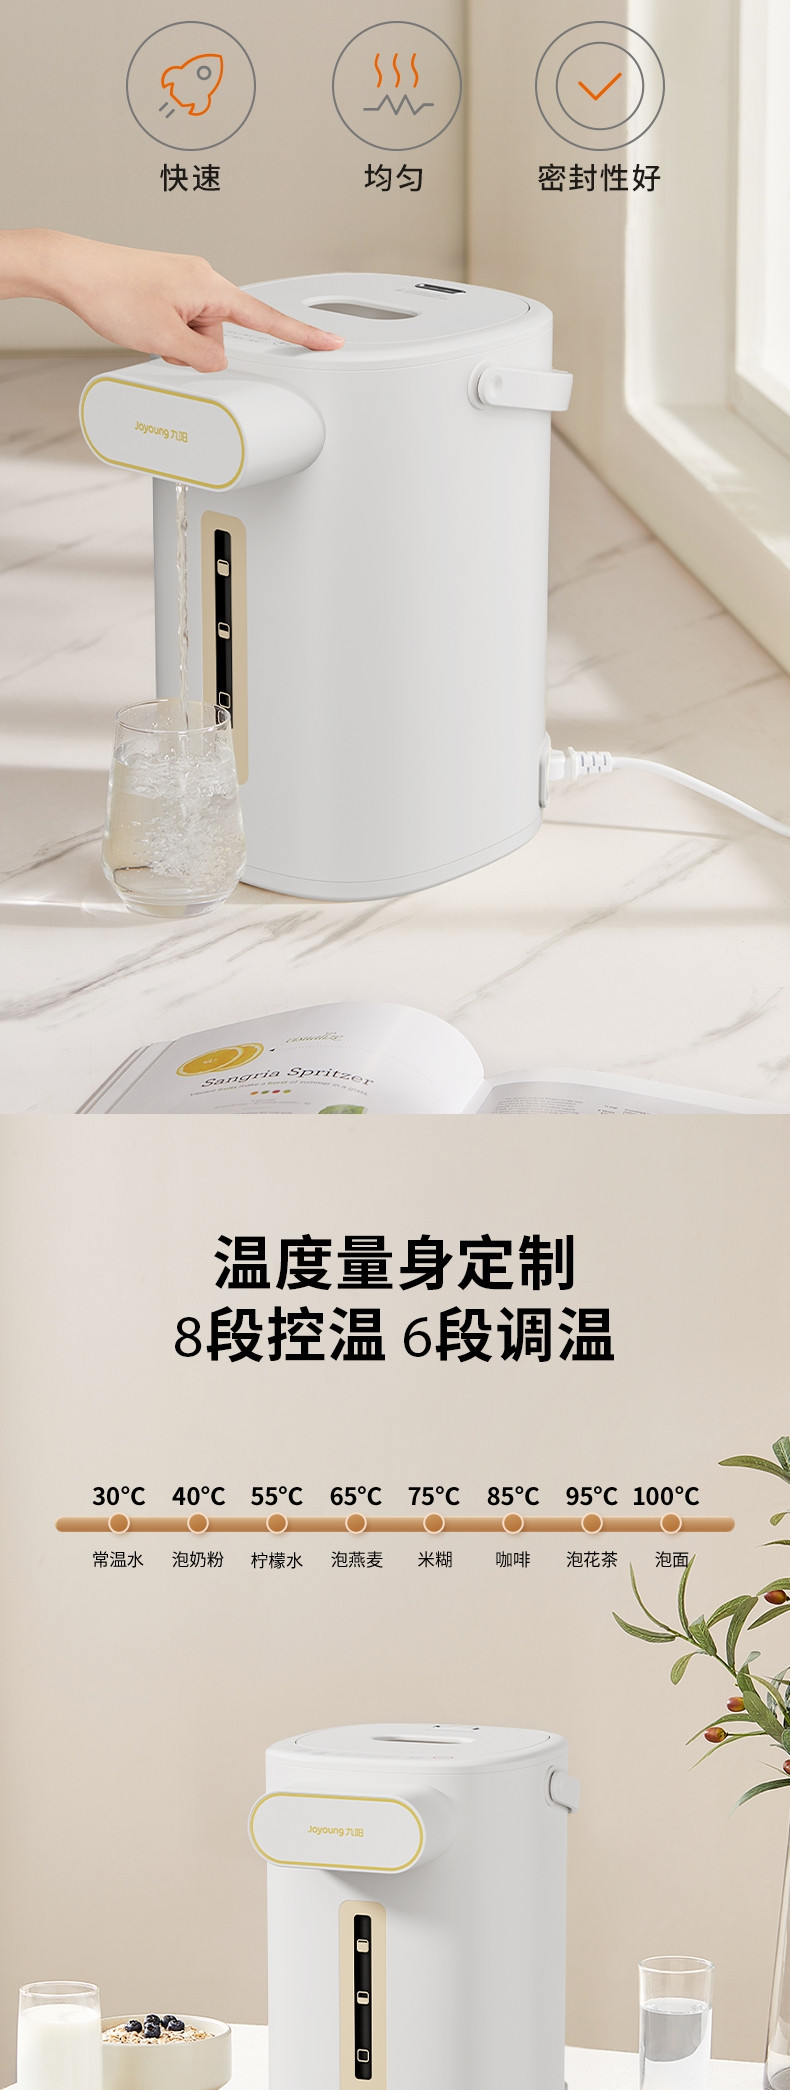 九阳 电热水瓶K55ED-WP6130